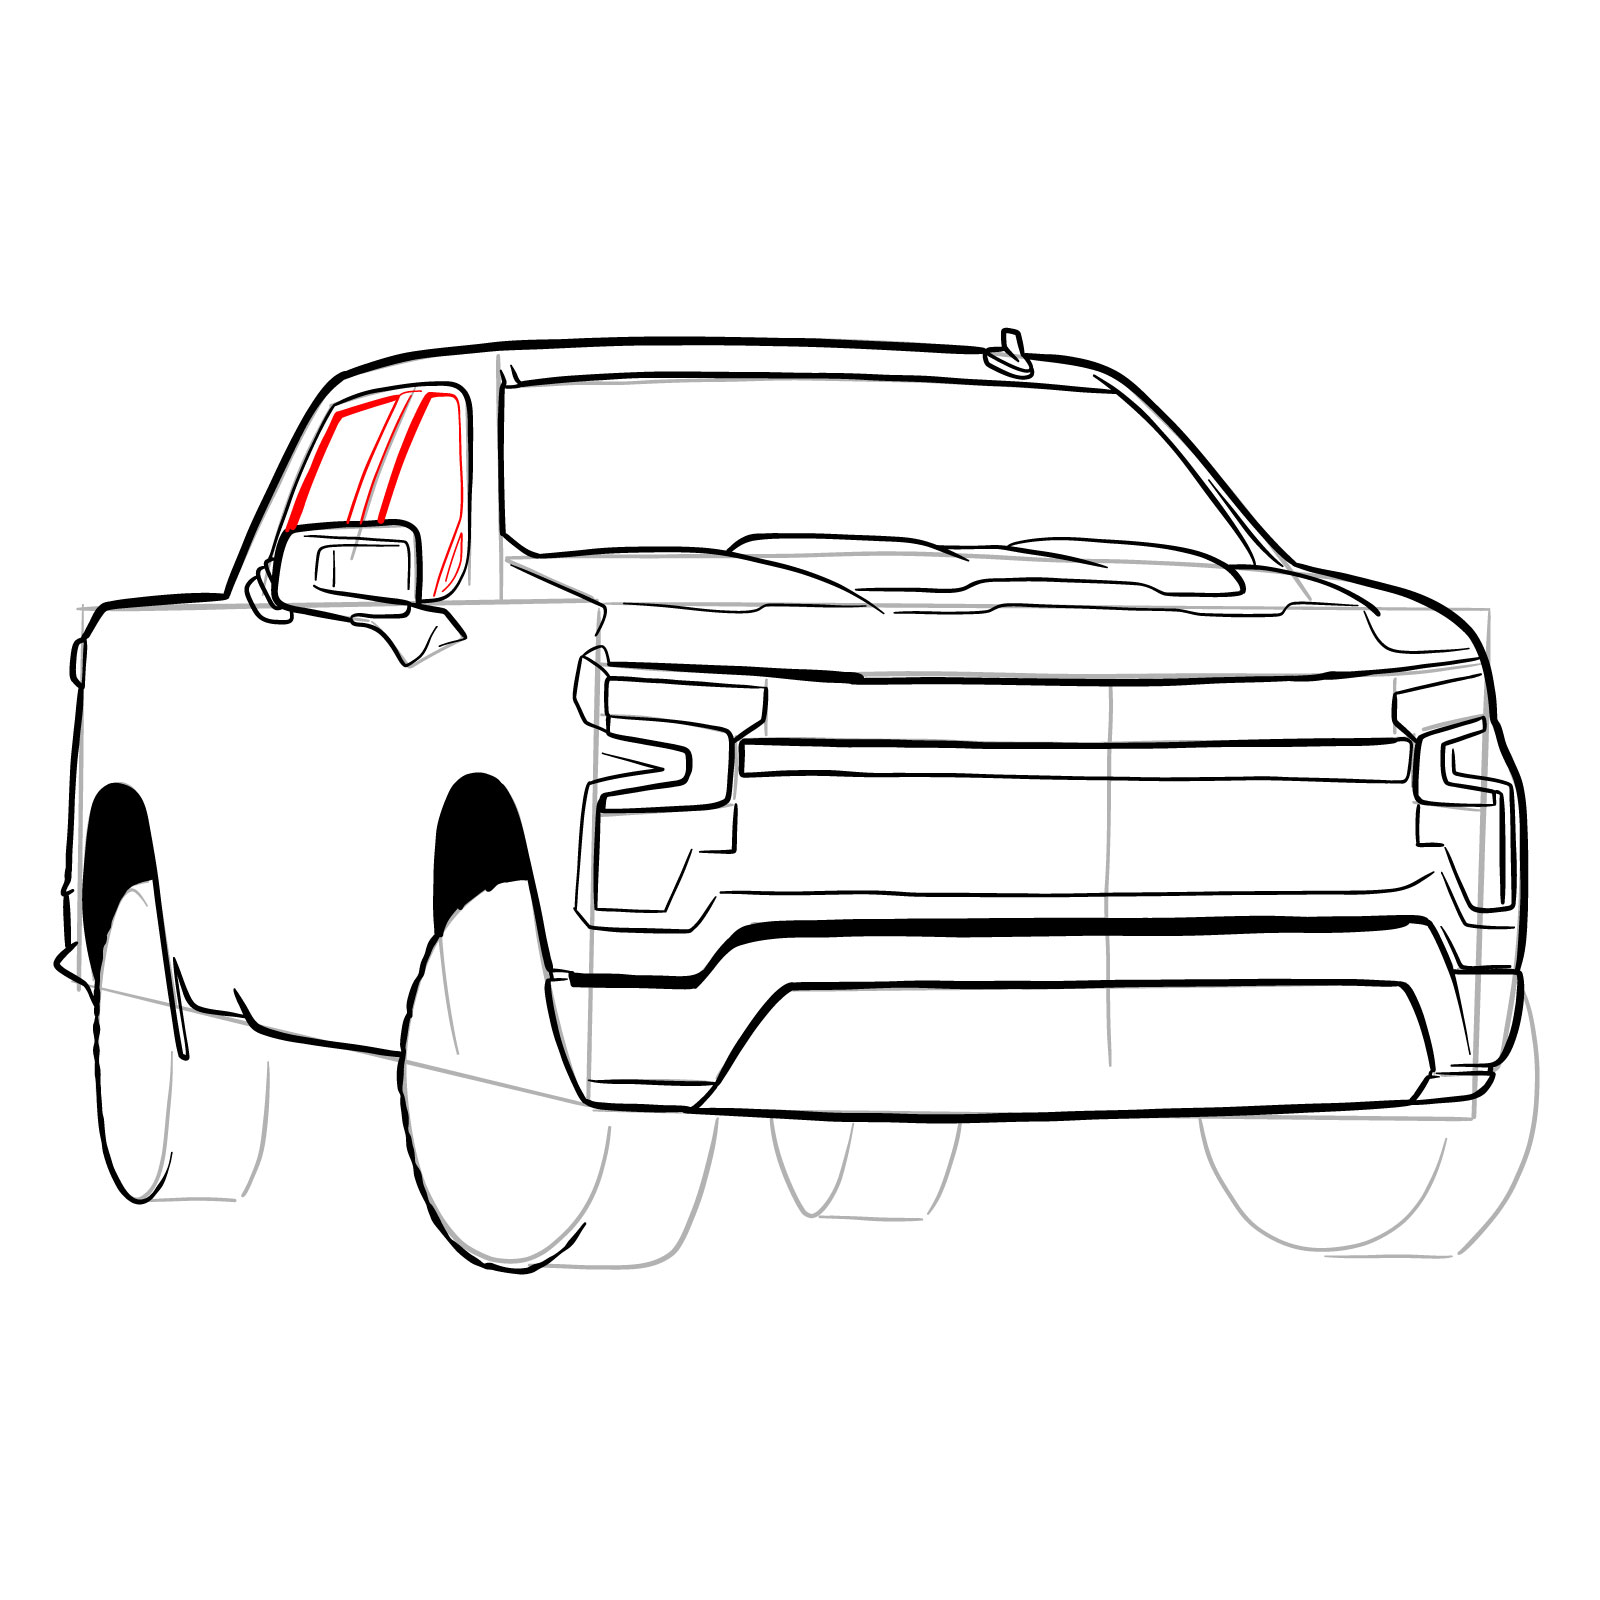 How to draw a 2022 Chevy Silverado - step 25